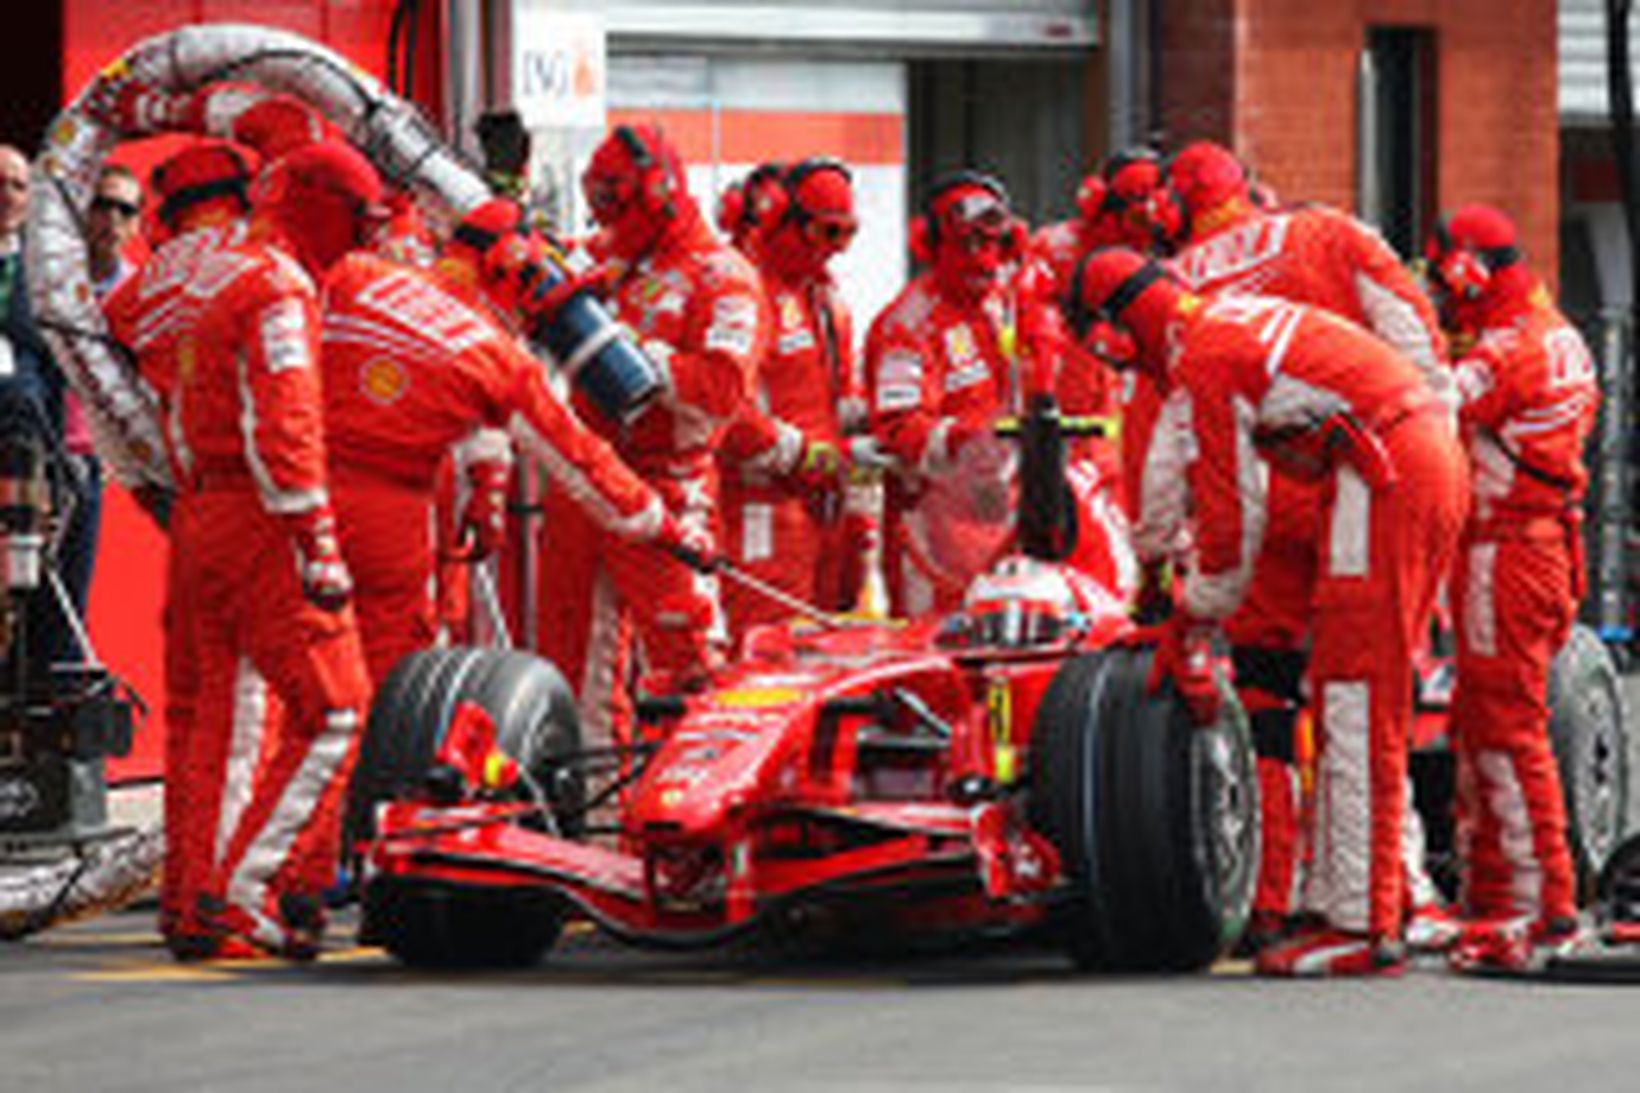 Räikkönen skiptir um dekk í lokalotu tímatökunnar.